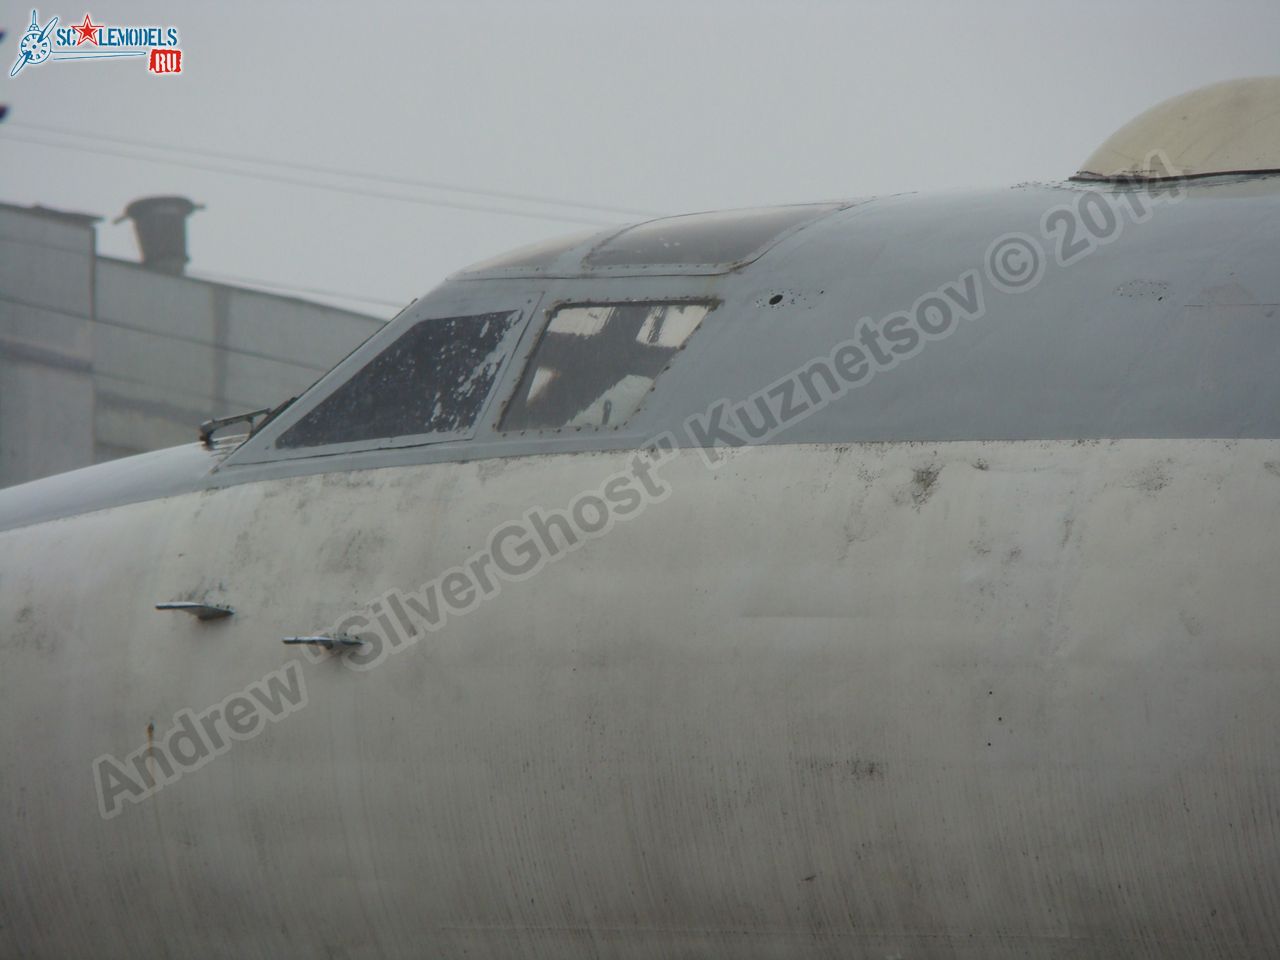 Tu-16_Badger_Smolensk_0043.jpg